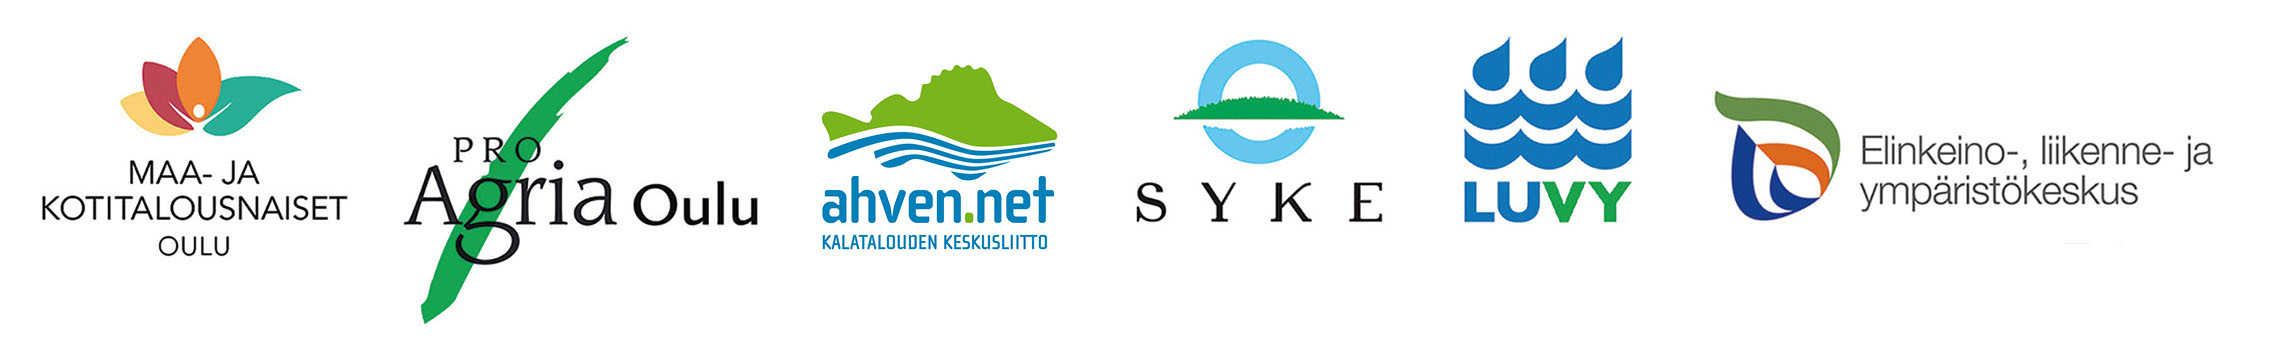 Logot: Verkostoilla tehoa vesienhoitoon toteuttajaorganisaatiot: Maa- ja kotitalousnaiset Oulu, ProAgria Oulu, Kalatalouden keskusliitto Ahven.net, SYKE, LUVY, ELY